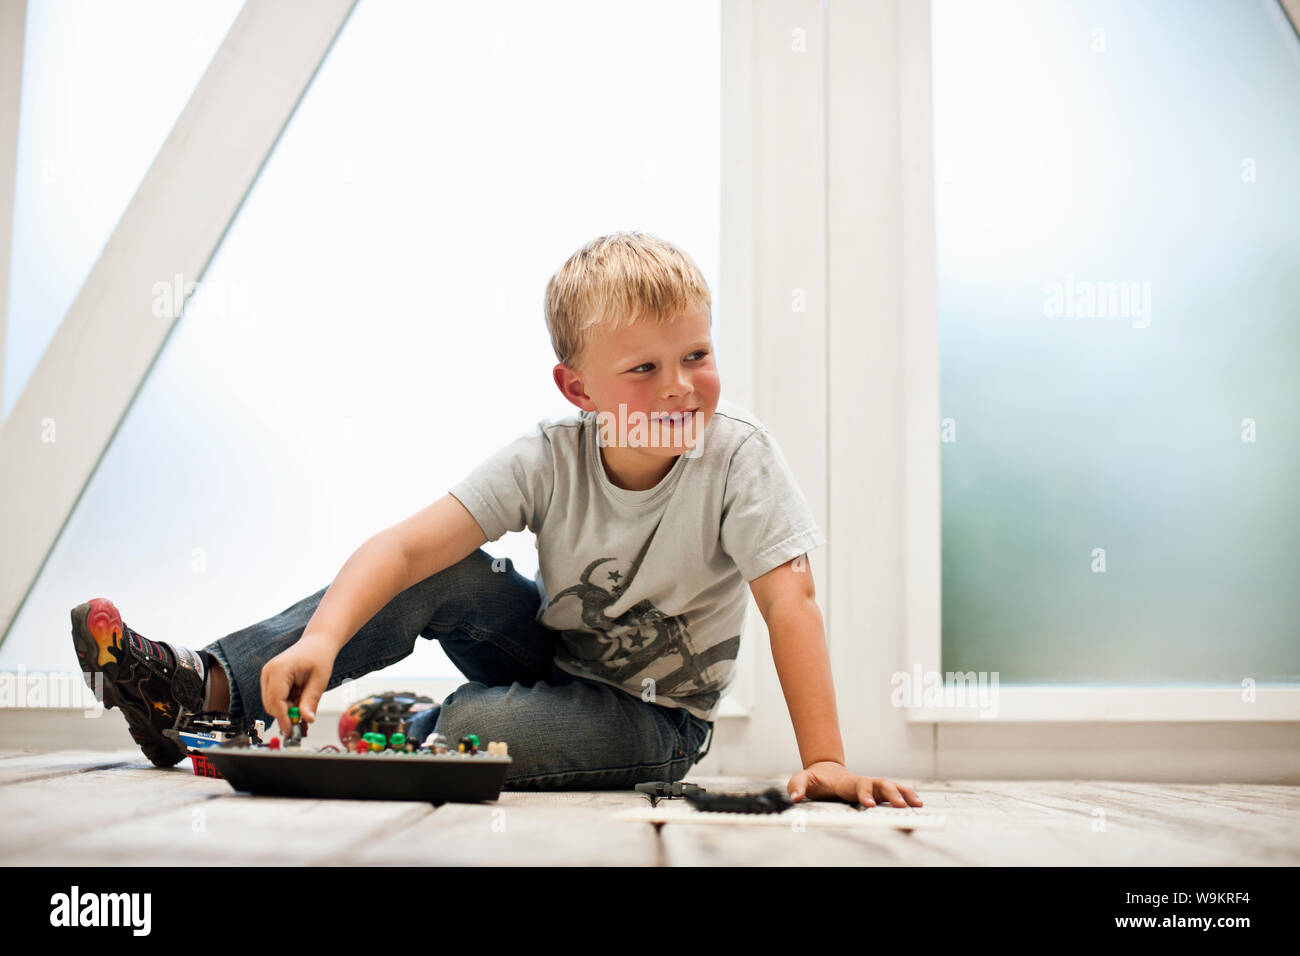 Junge spielt mit seinem Spielzeug auf dem Boden. Stockfoto